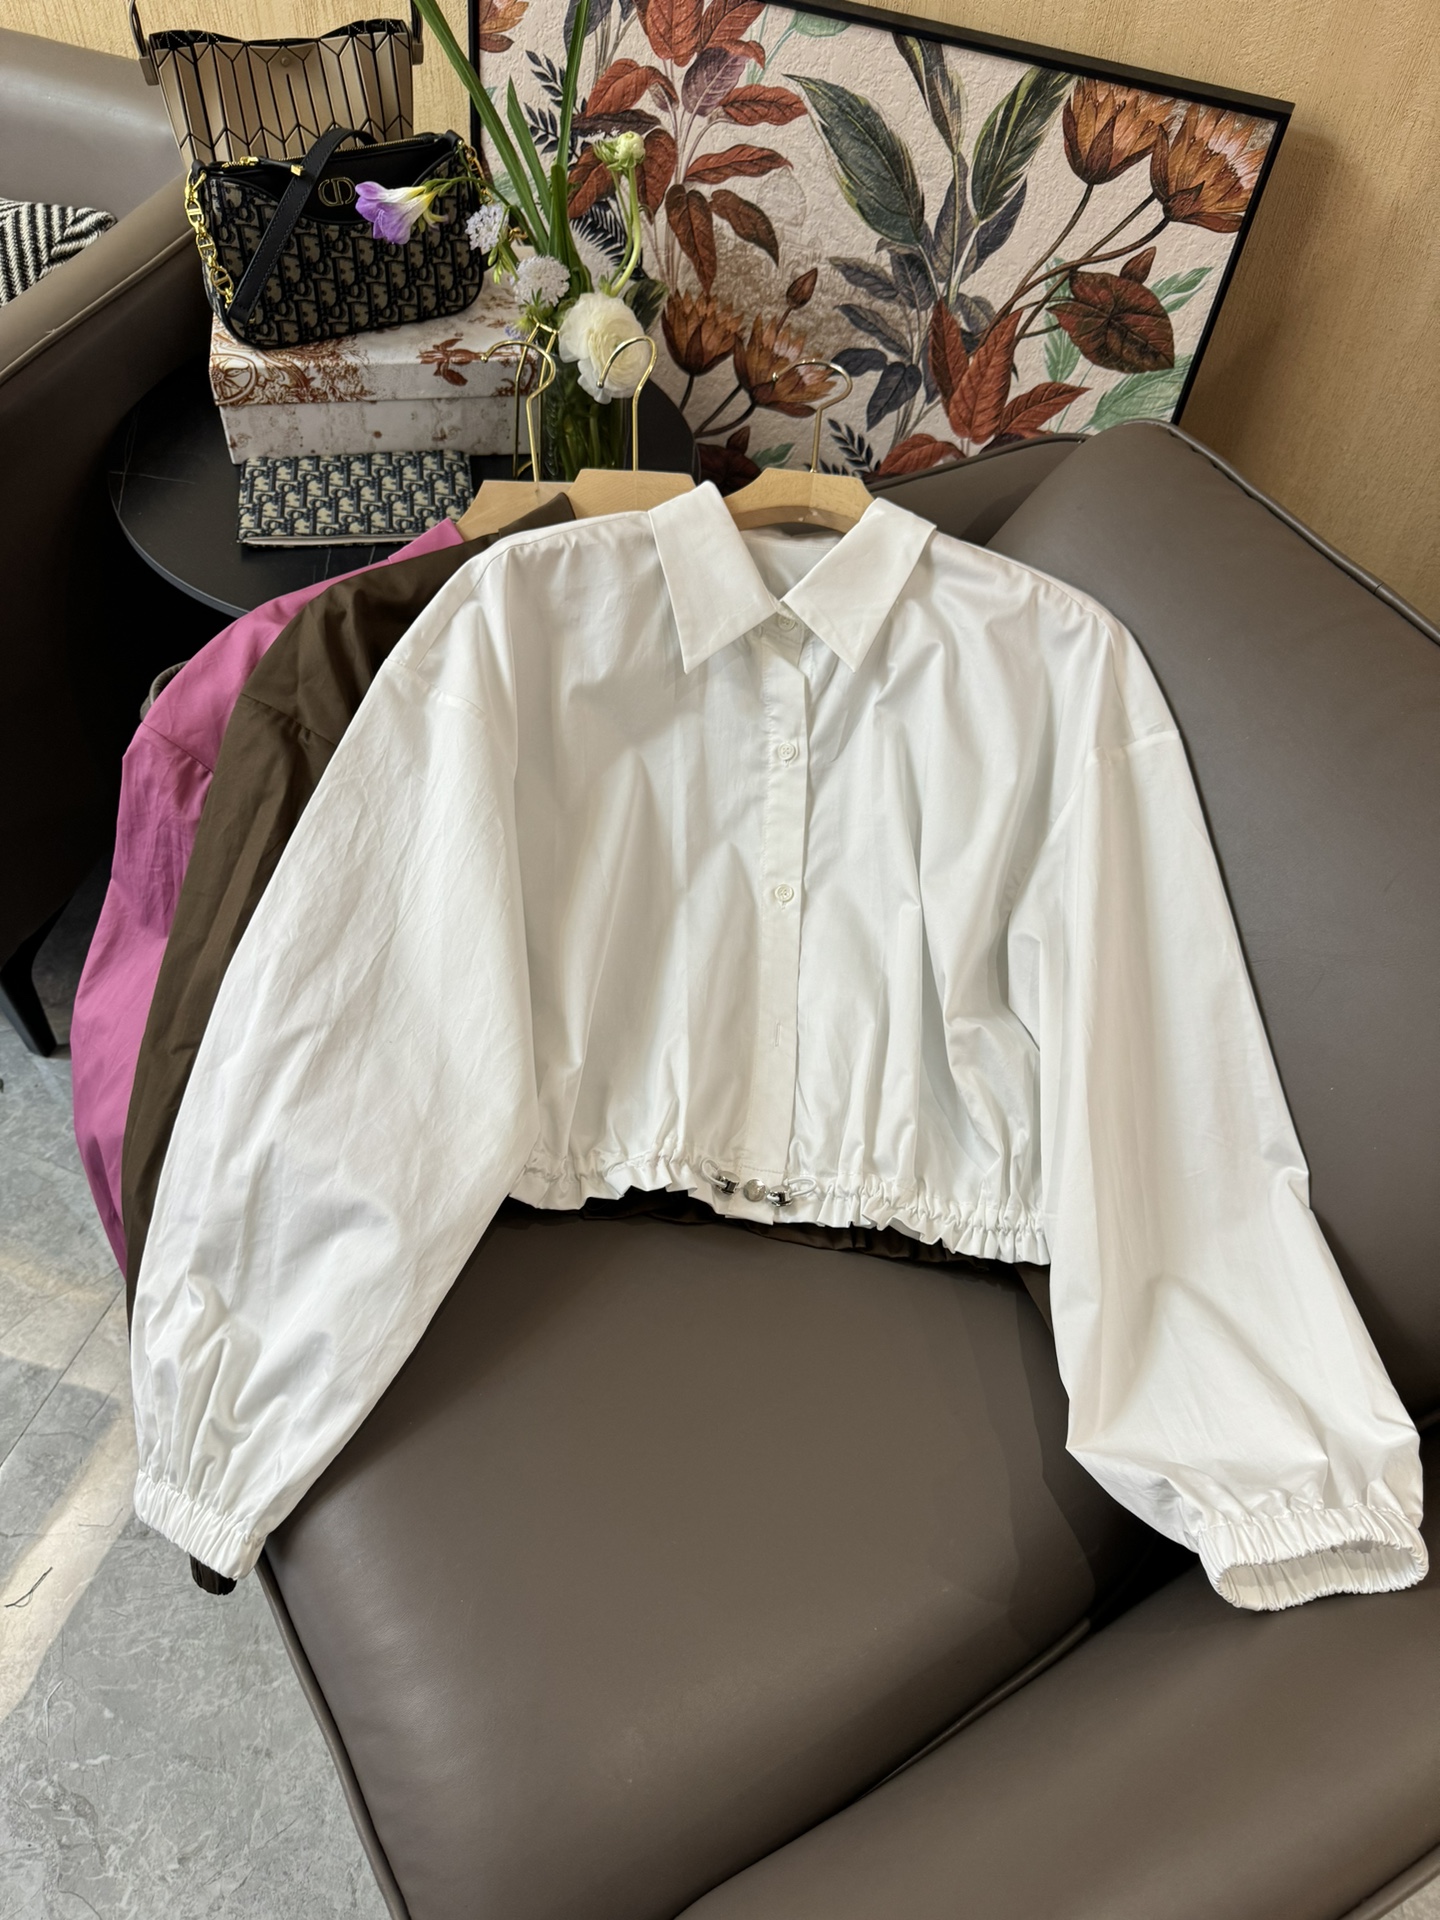 YJ010#新款衬衫原创设计大厂货长袖衬衫咖色白色玫红色SML